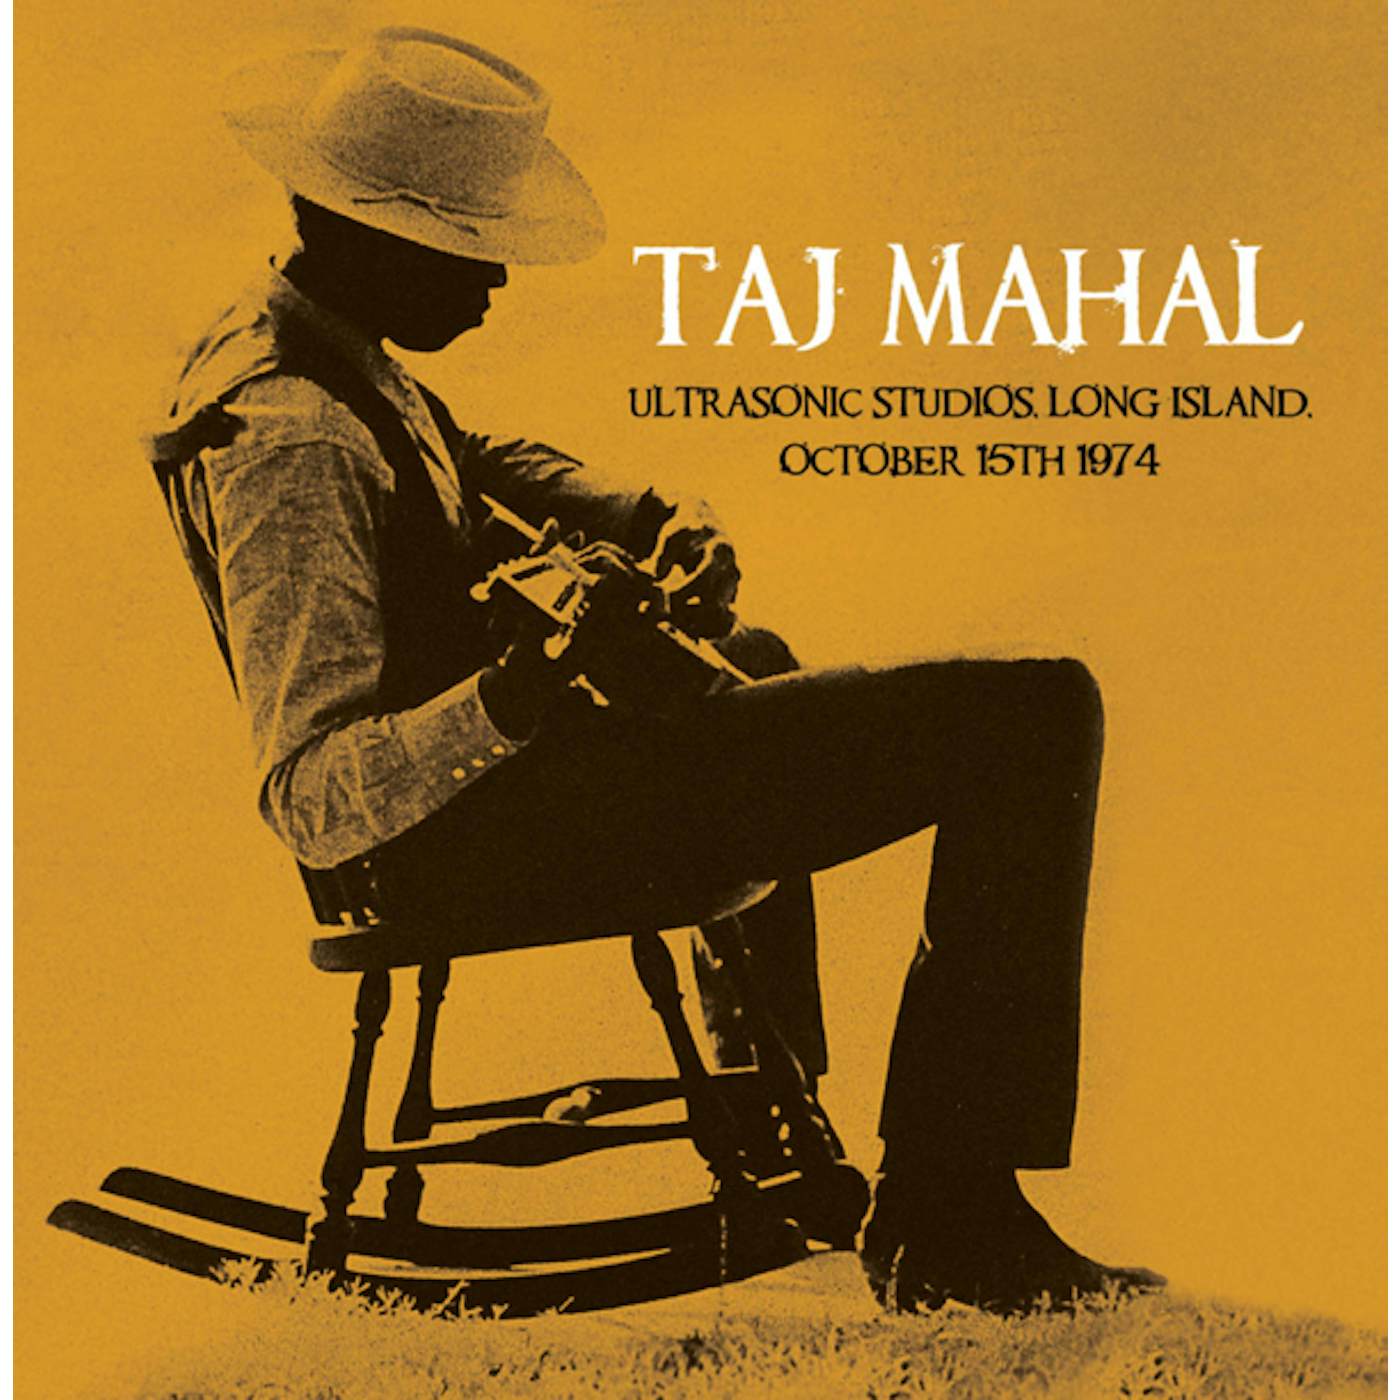 Taj Mahal ULTRASONIC STUDIOS LONG ISLAND OCTOBER 15TH 1974 CD